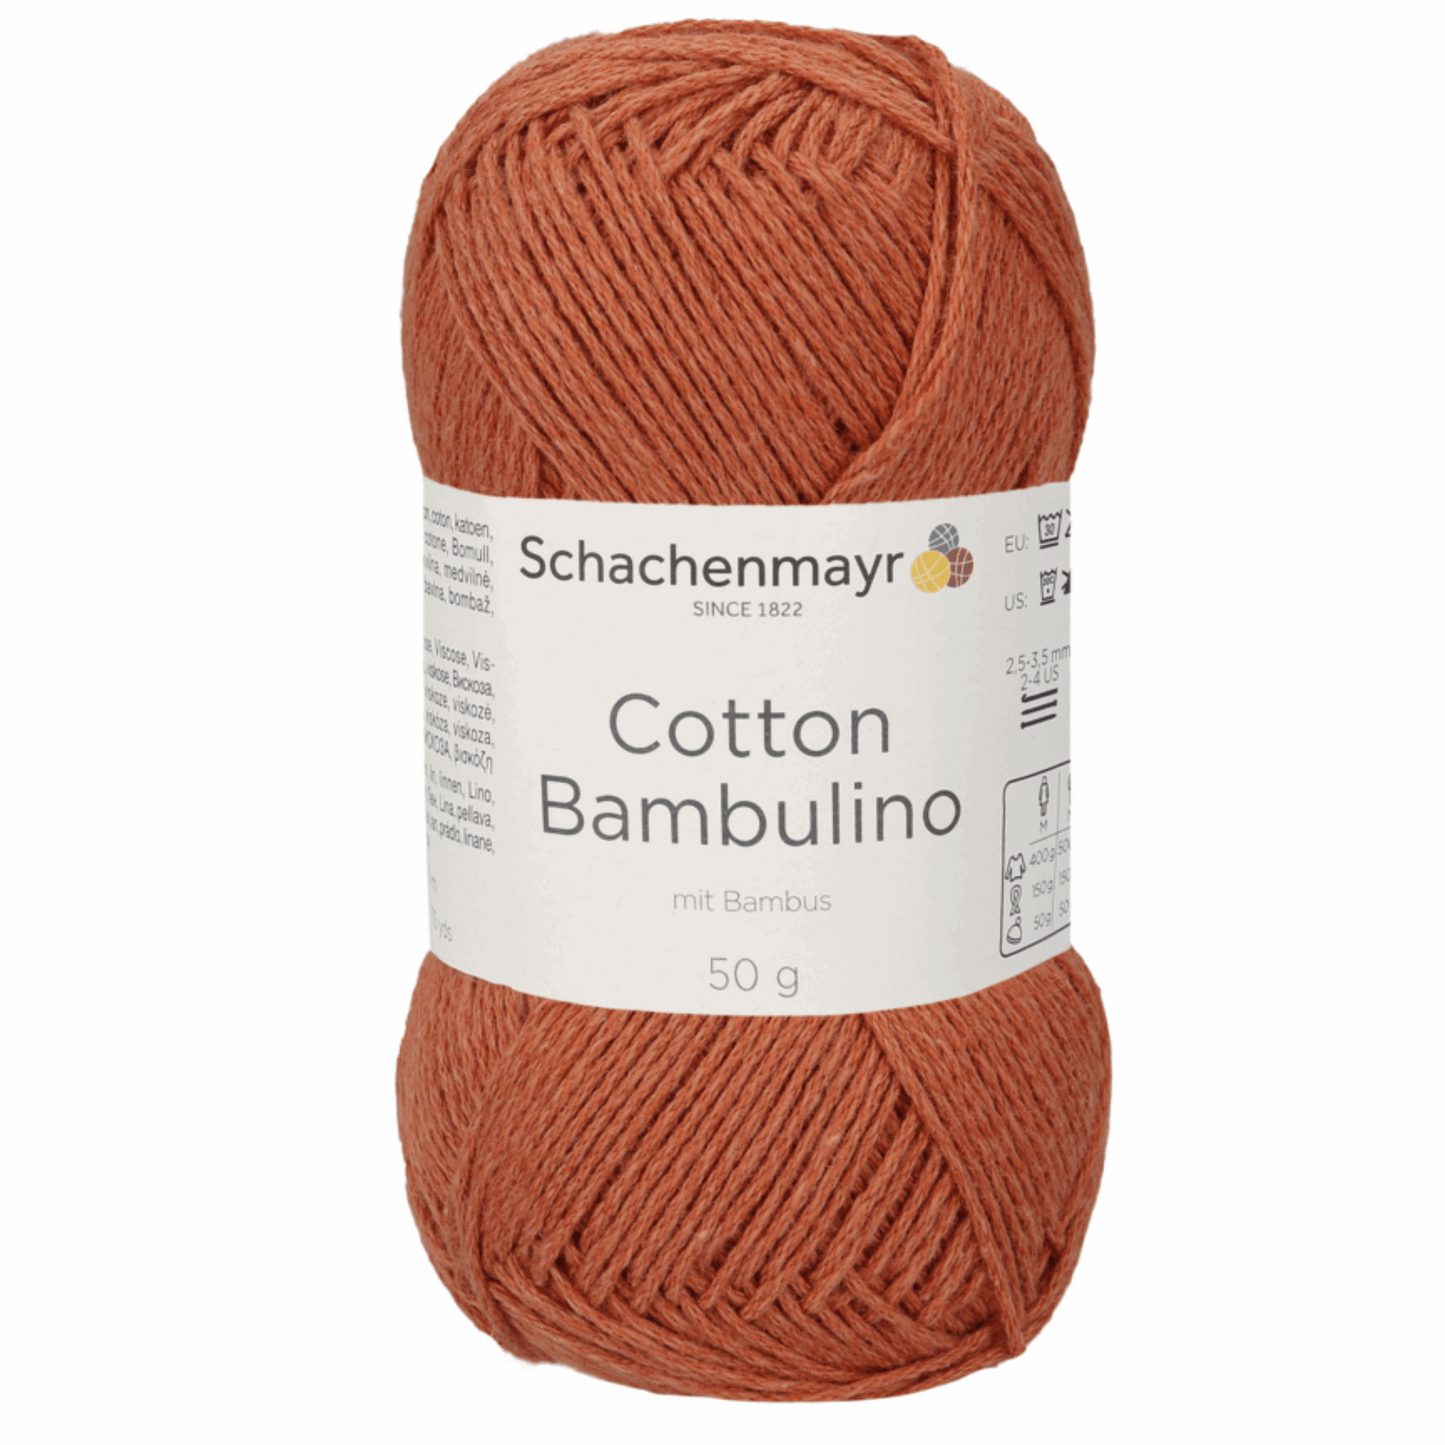 Schachenmayr Cotton Bambulino 50g, 90403, Farbe Terracotta 12